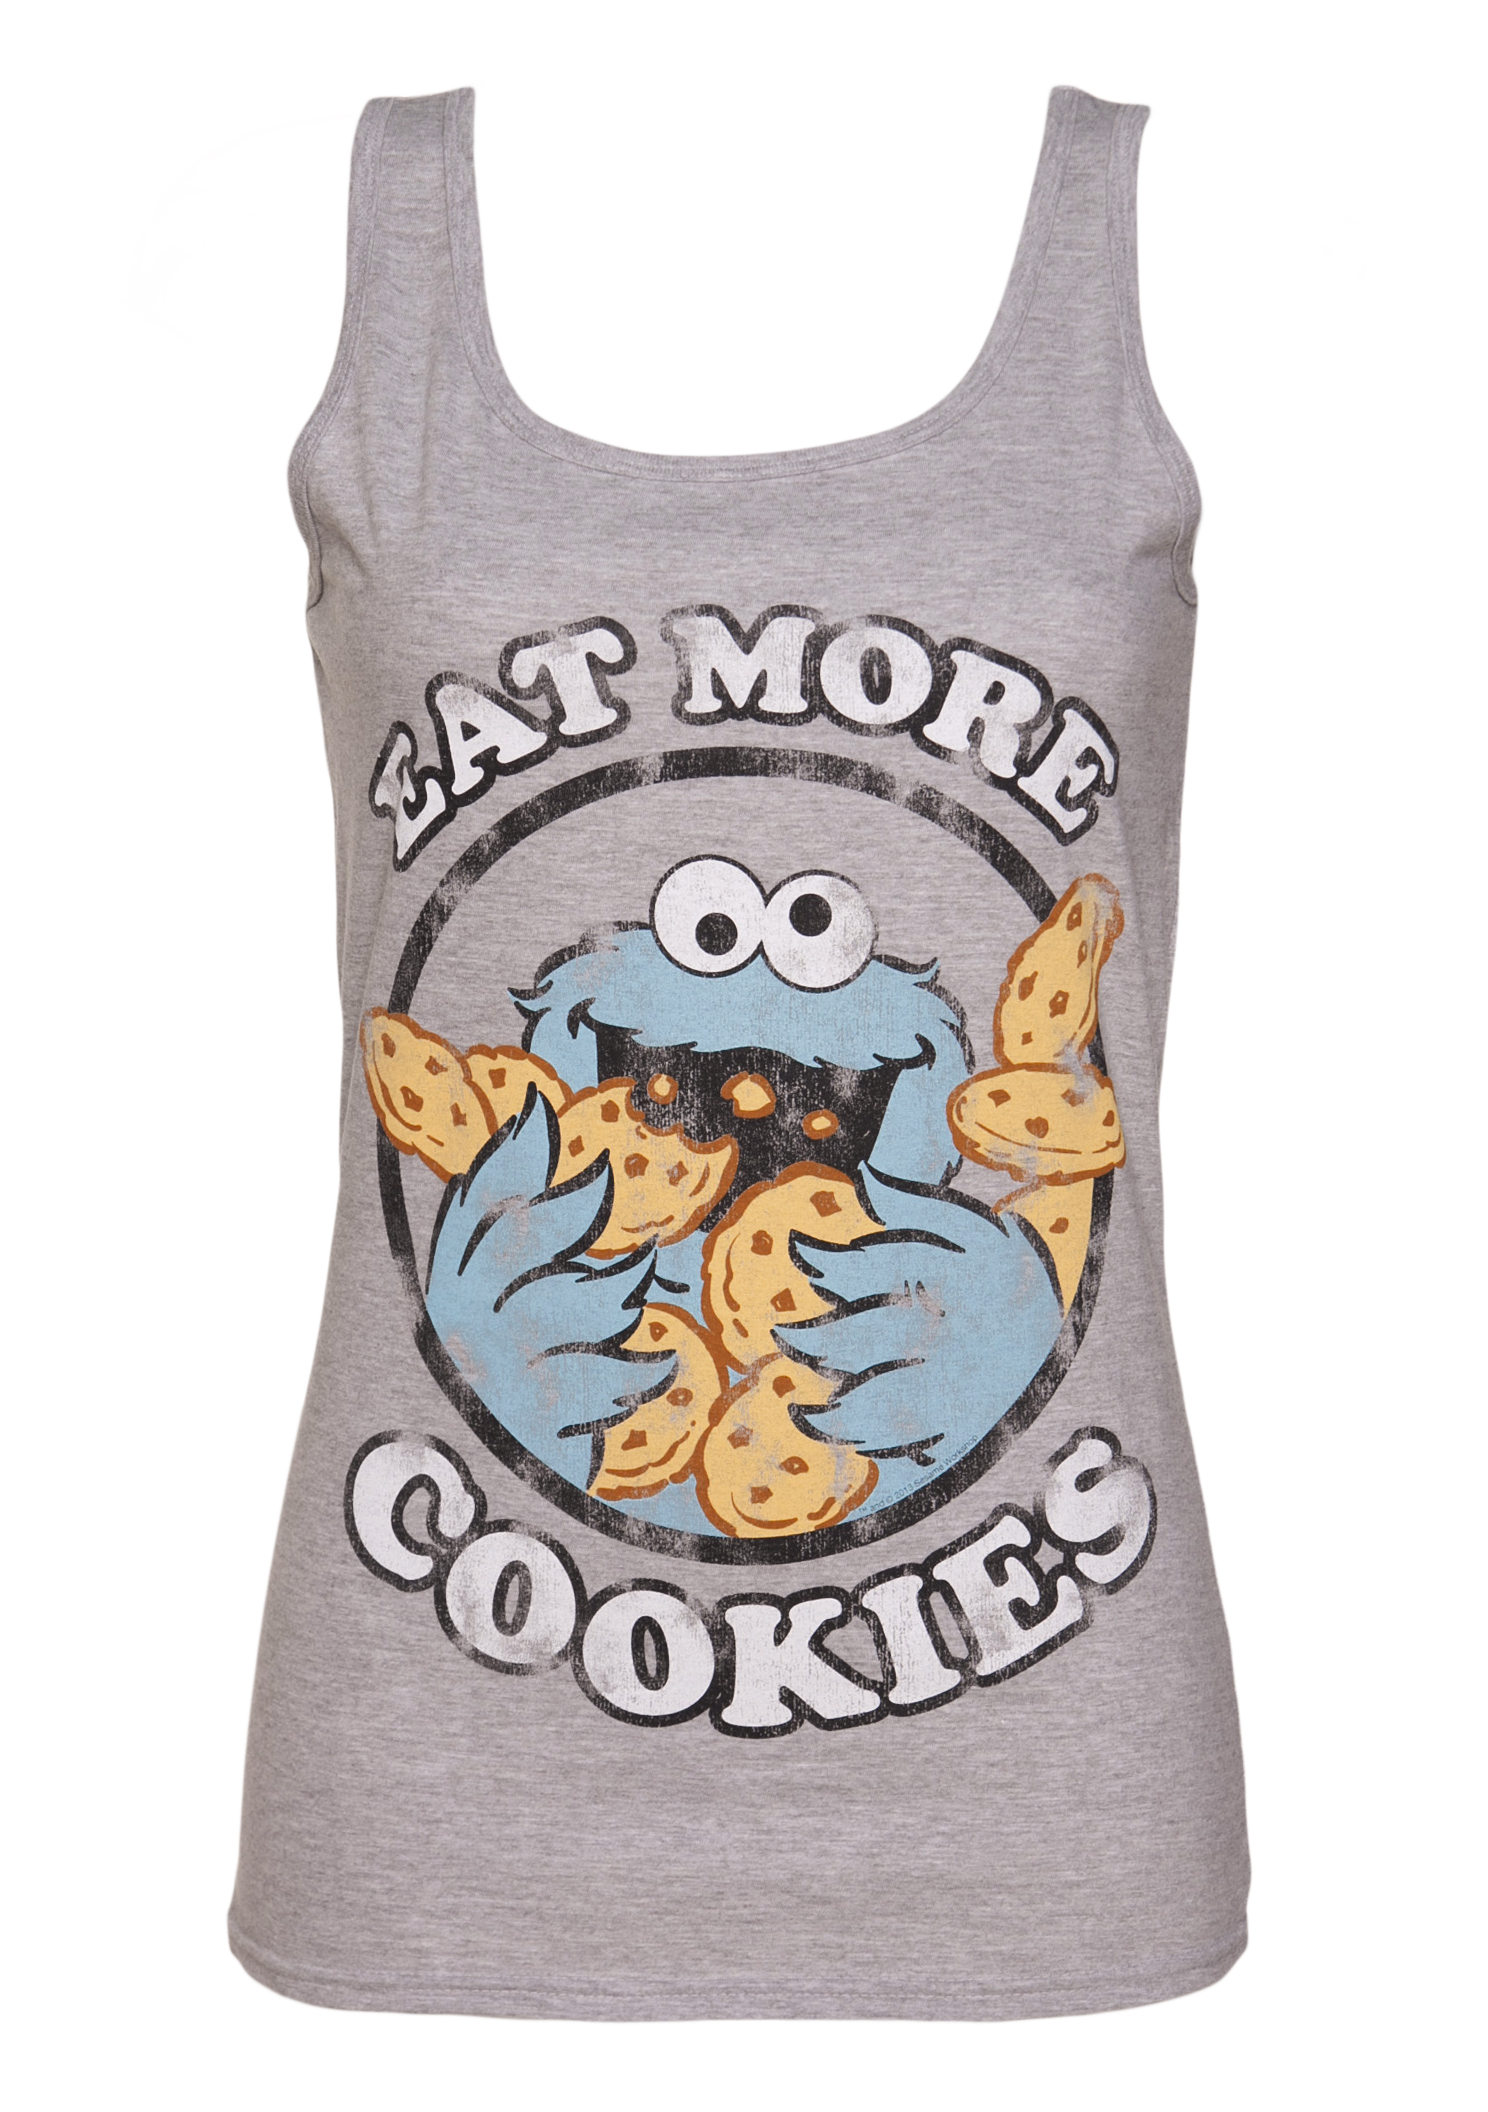 TruffleShuffle Ladies Cookie Monster Eat More Cookies Vest